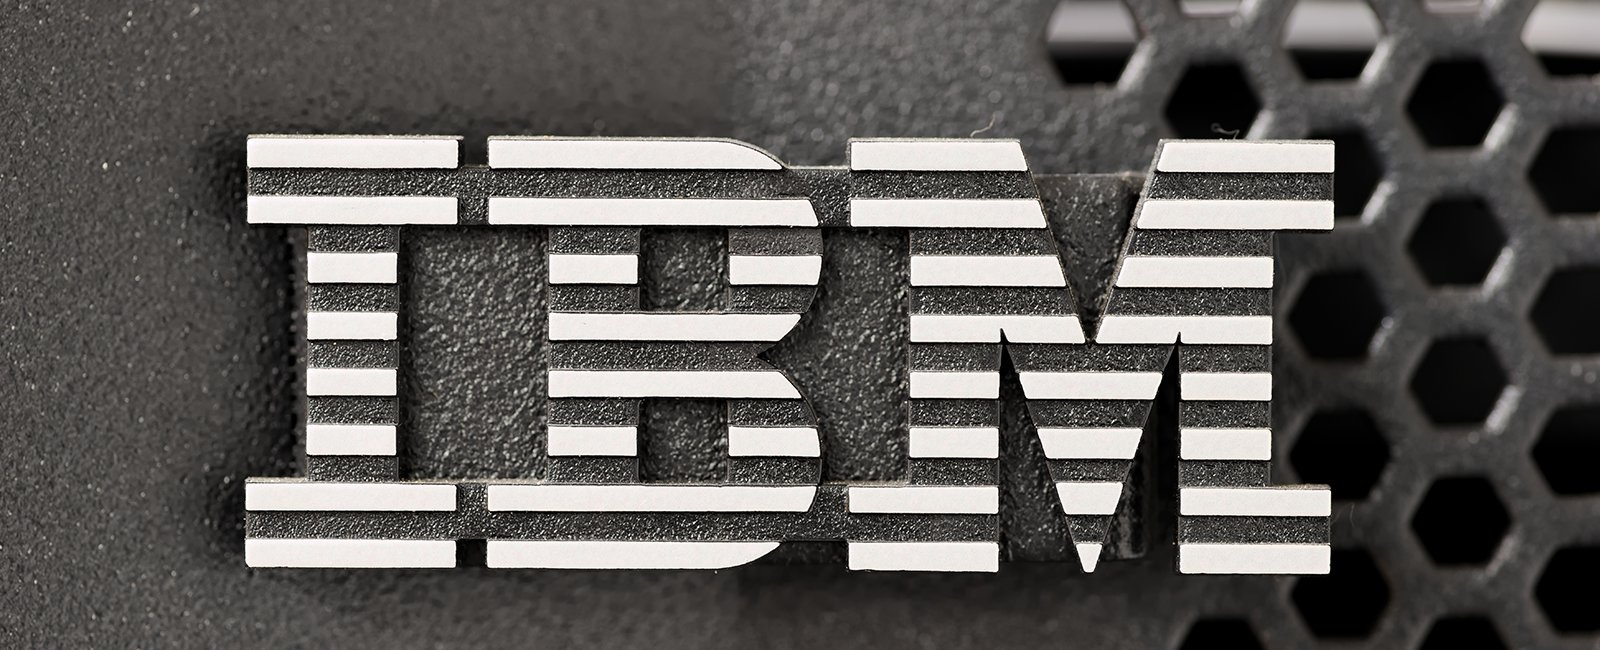 Модернизация распределённой платформы IBM Power